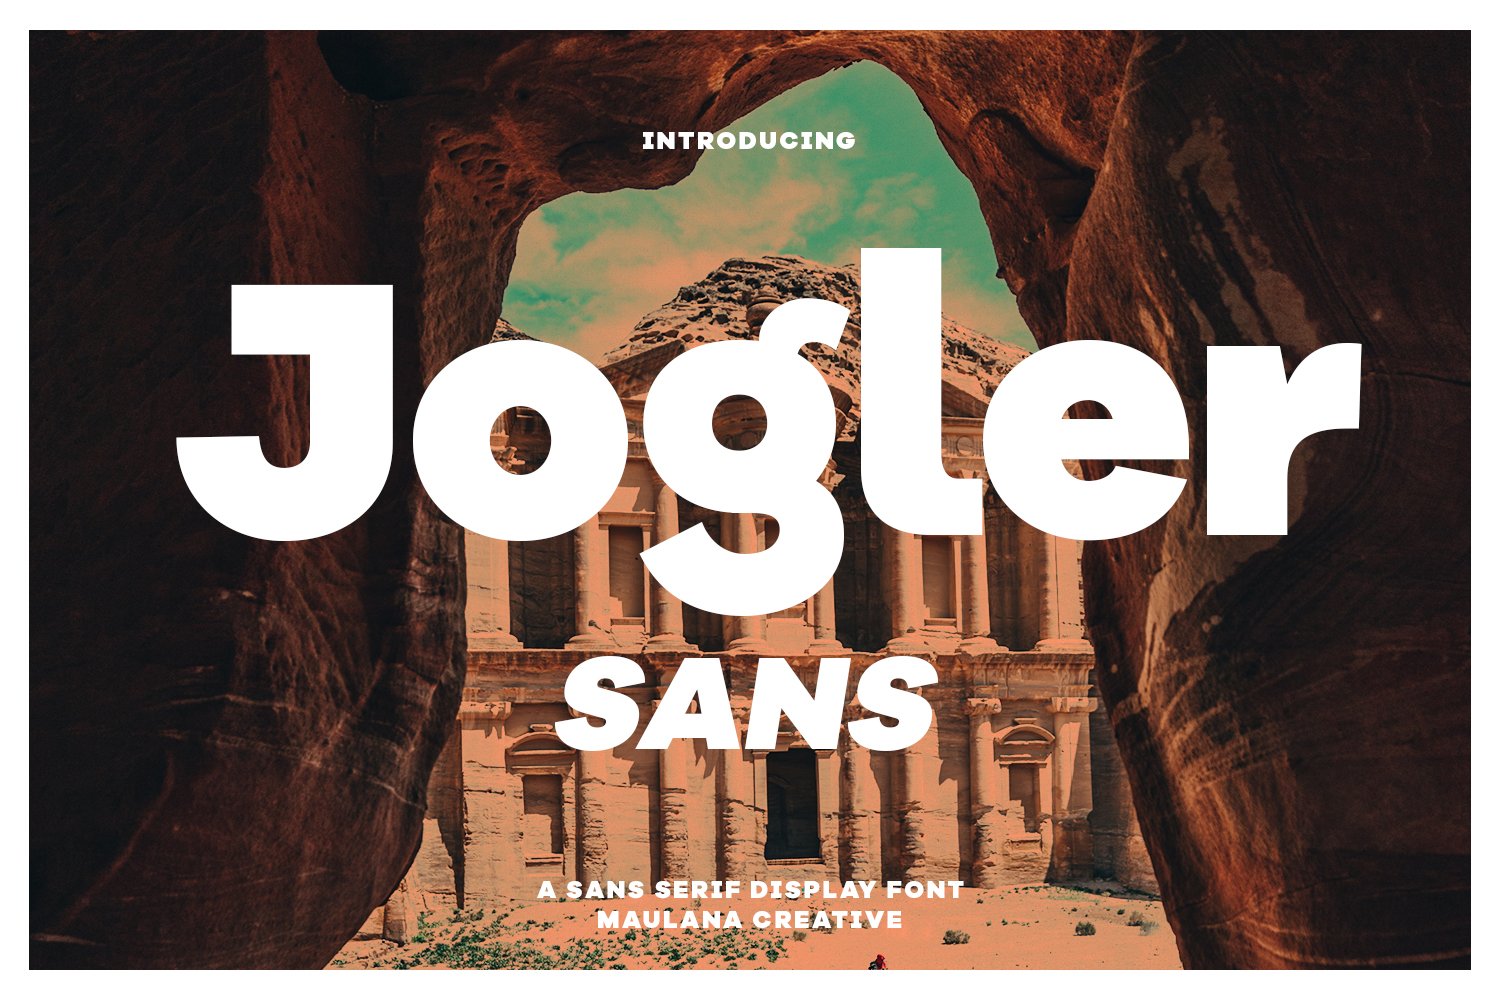 Jogler Sans Display Font cover image.